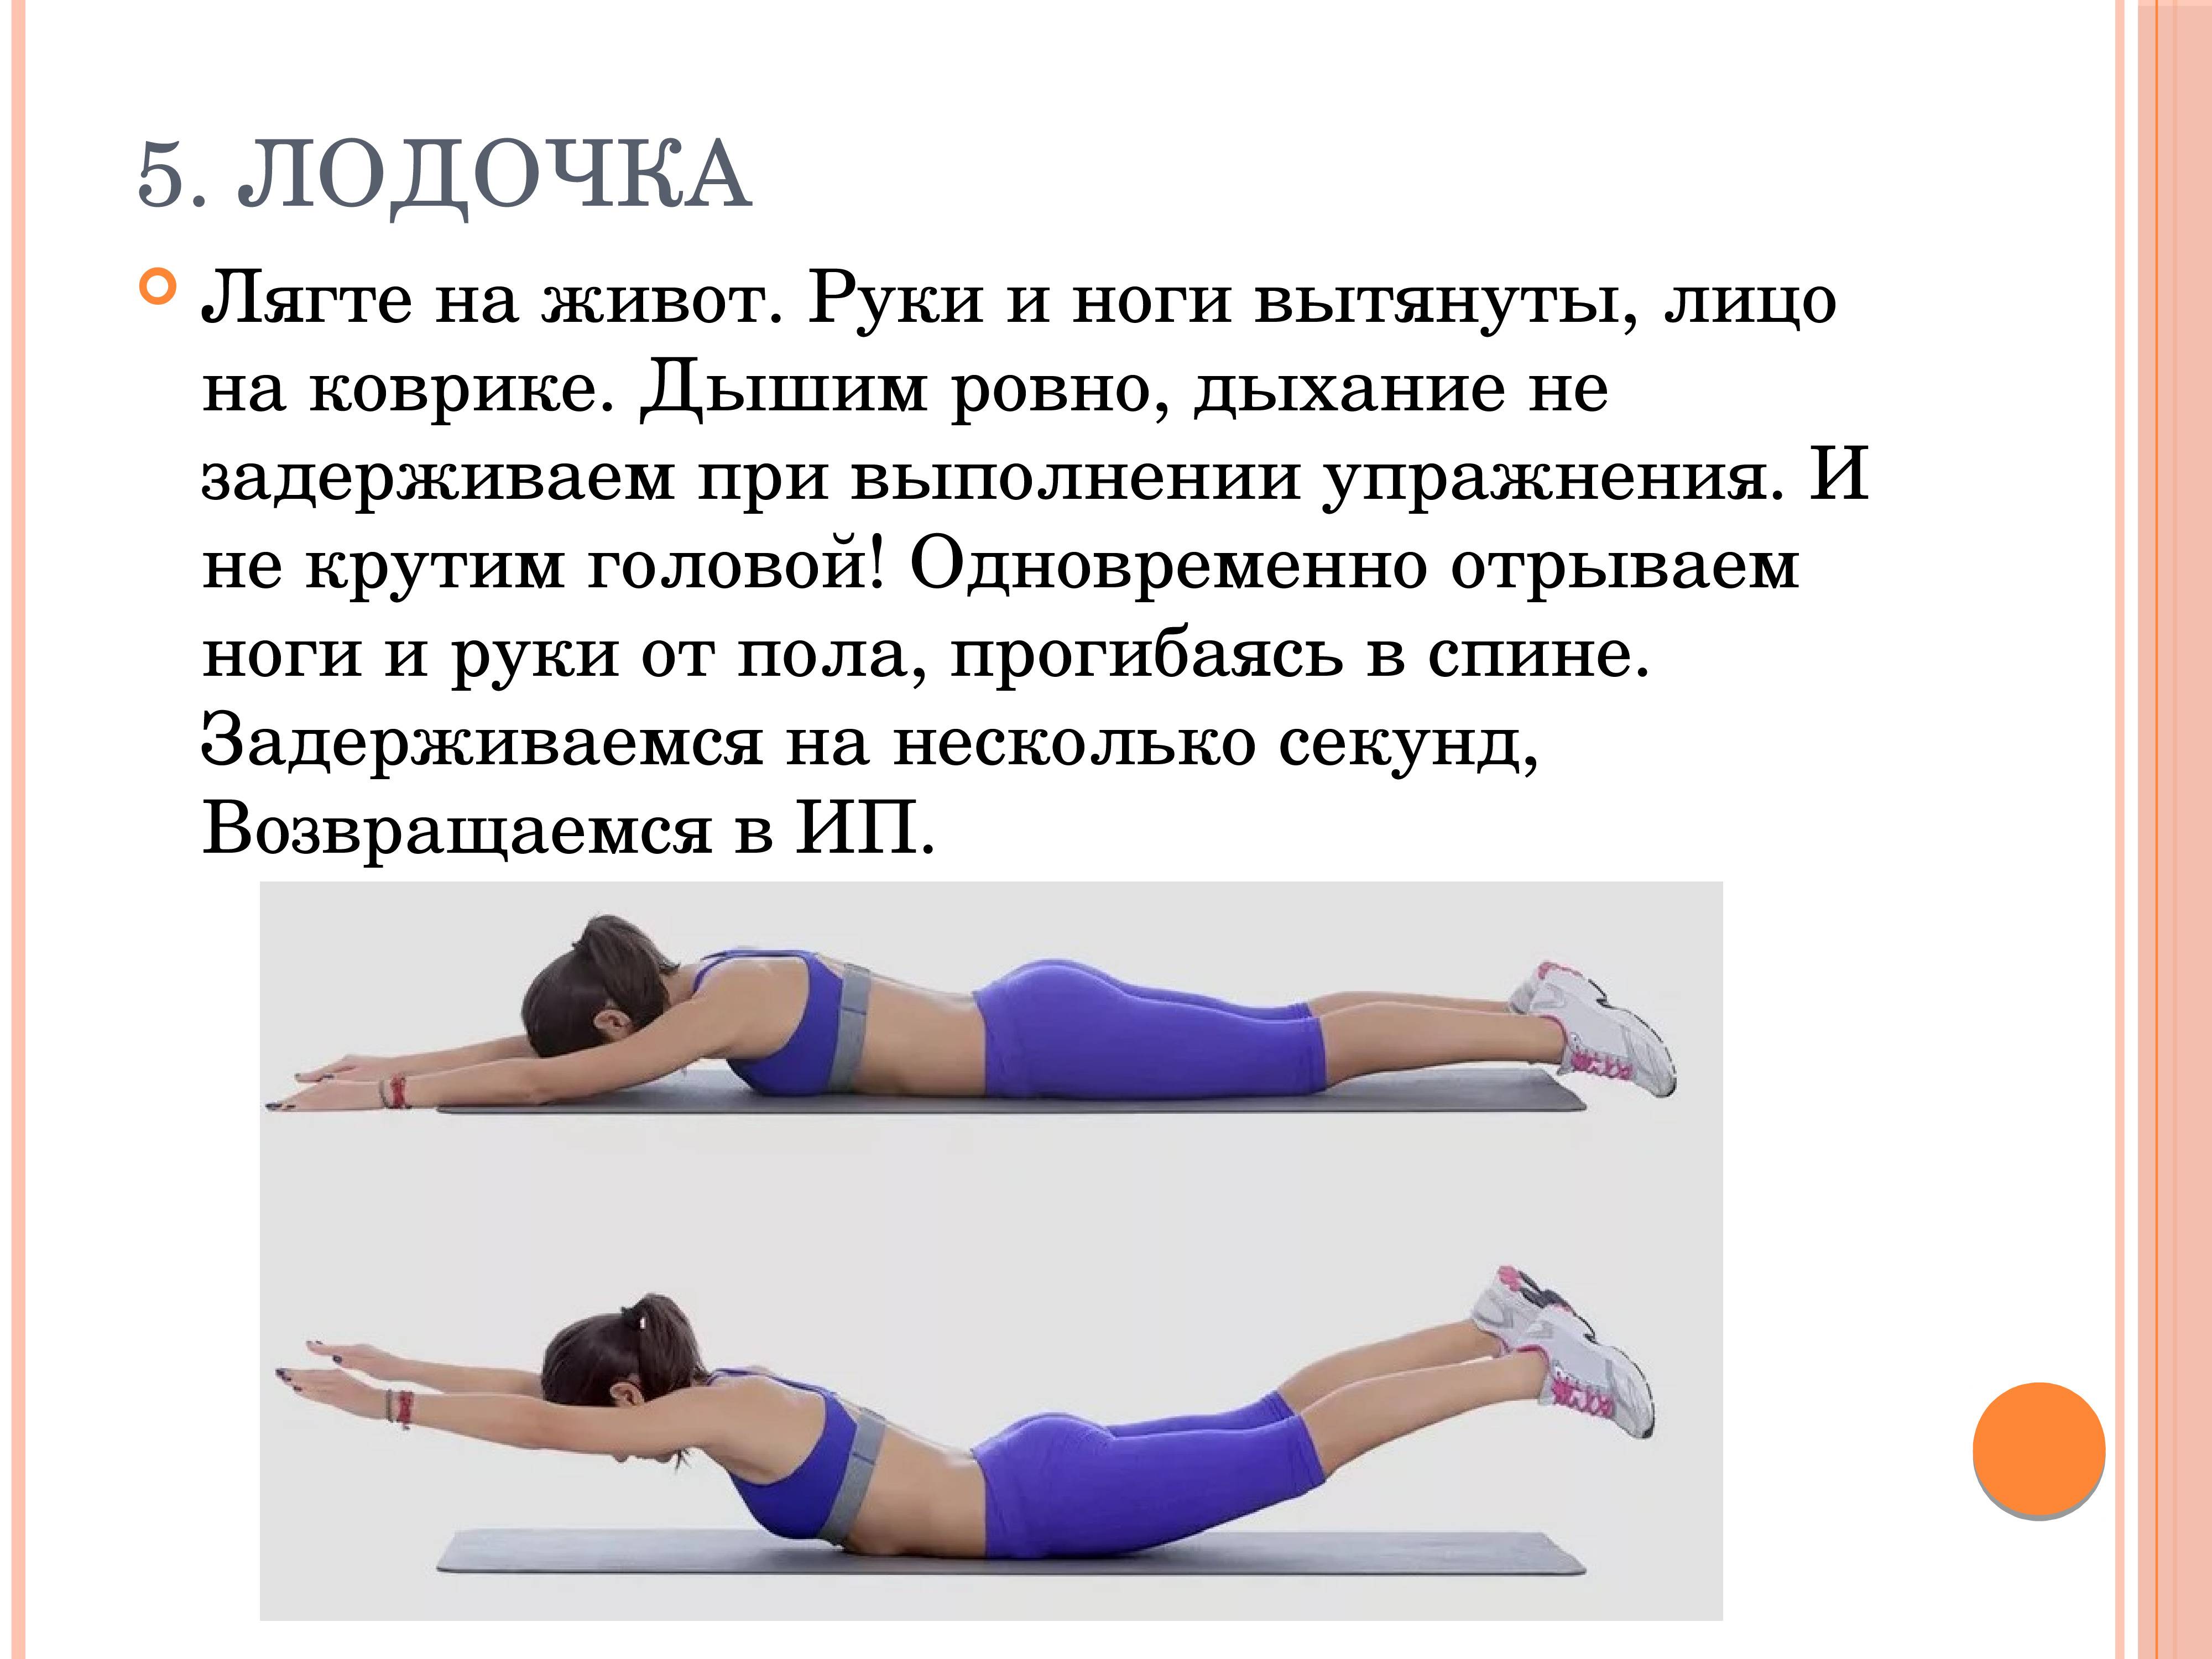 Упражнение ласточка – простой и эффективный гимнастический элемент для укрепления спины и мышц всего тела